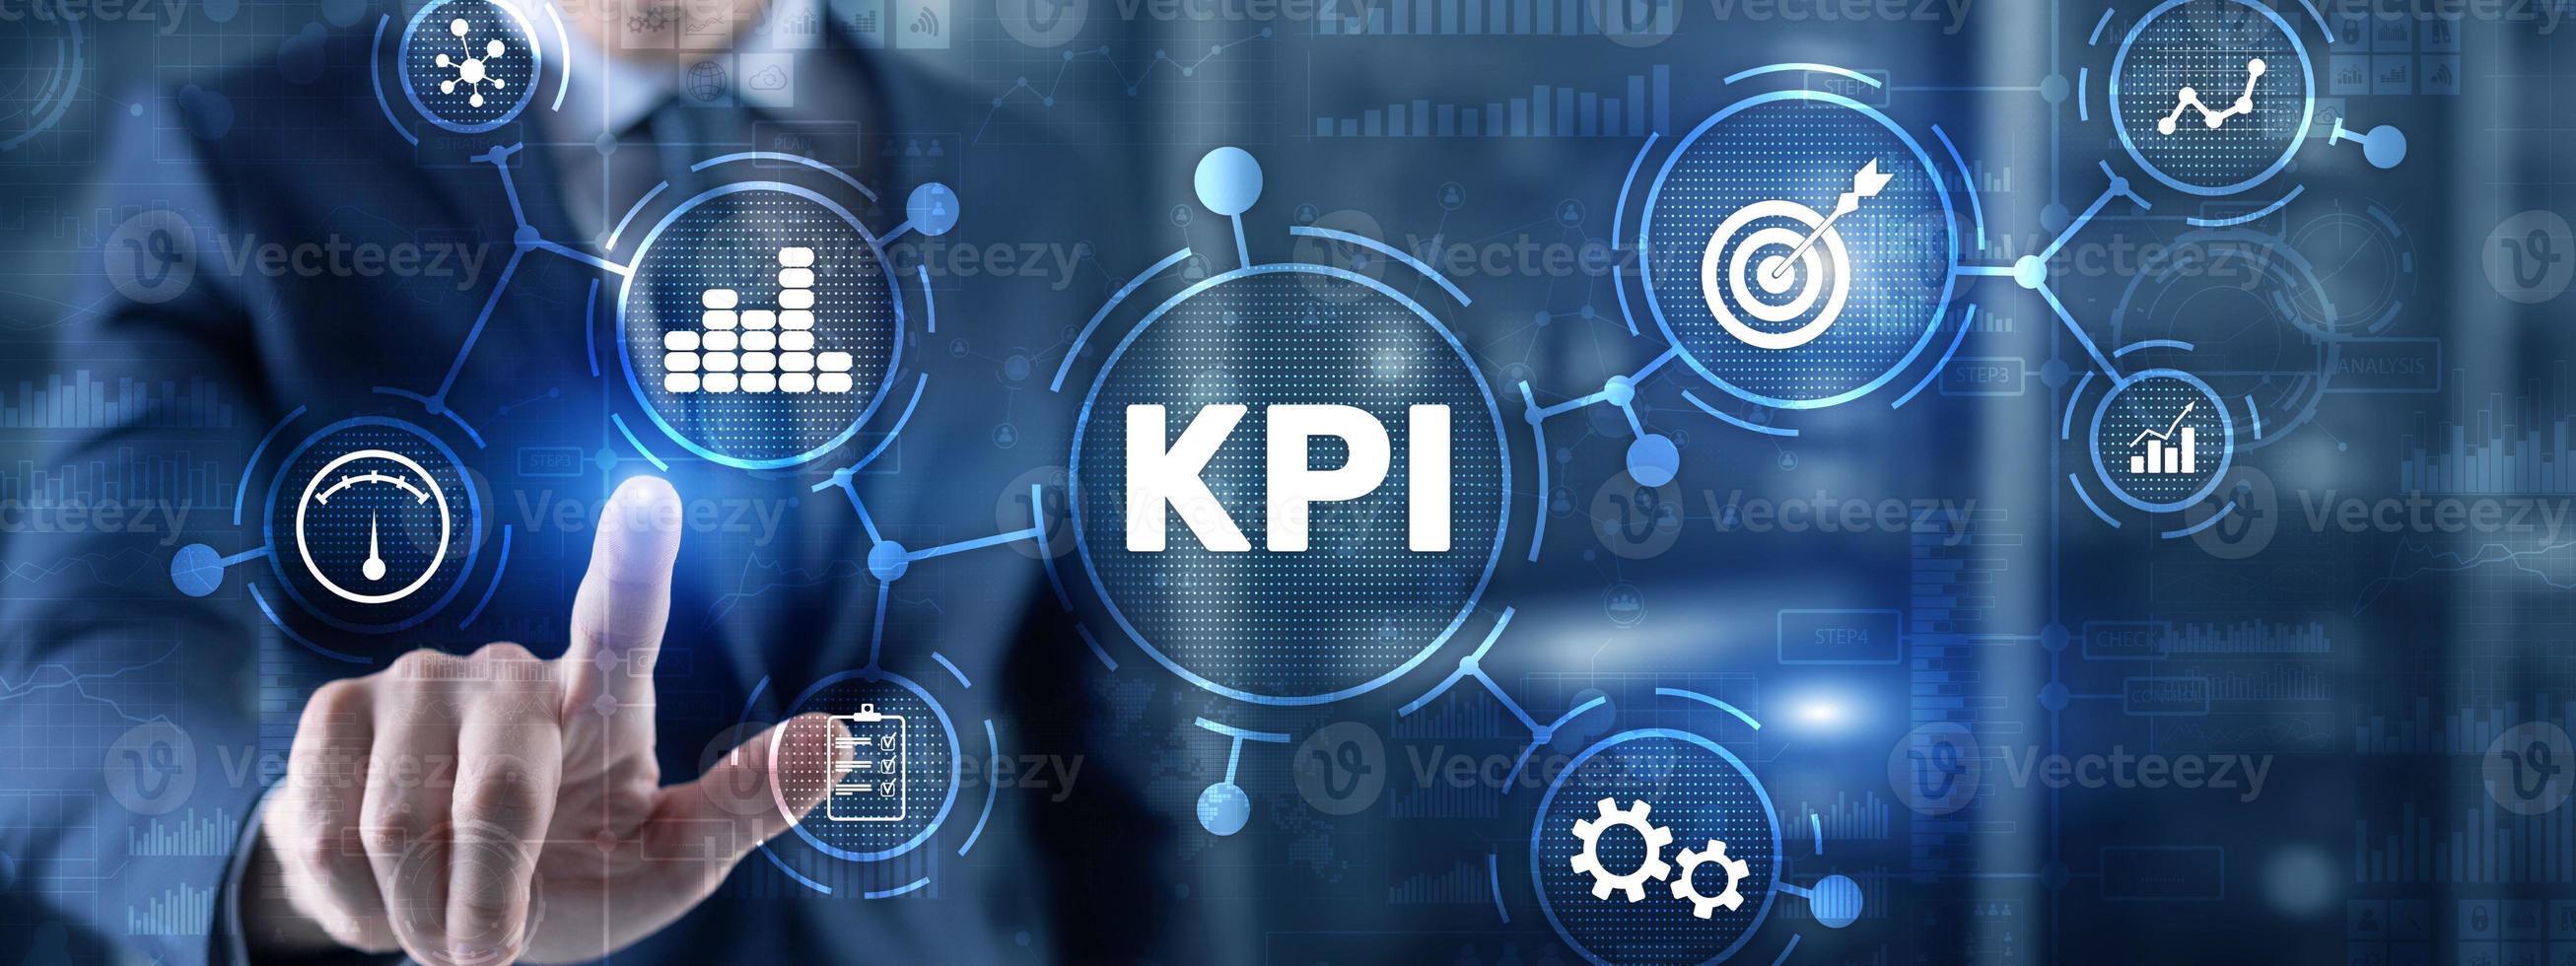 indicateur de performance clé kpi concept de technologie internet d'entreprise sur écran virtuel photo